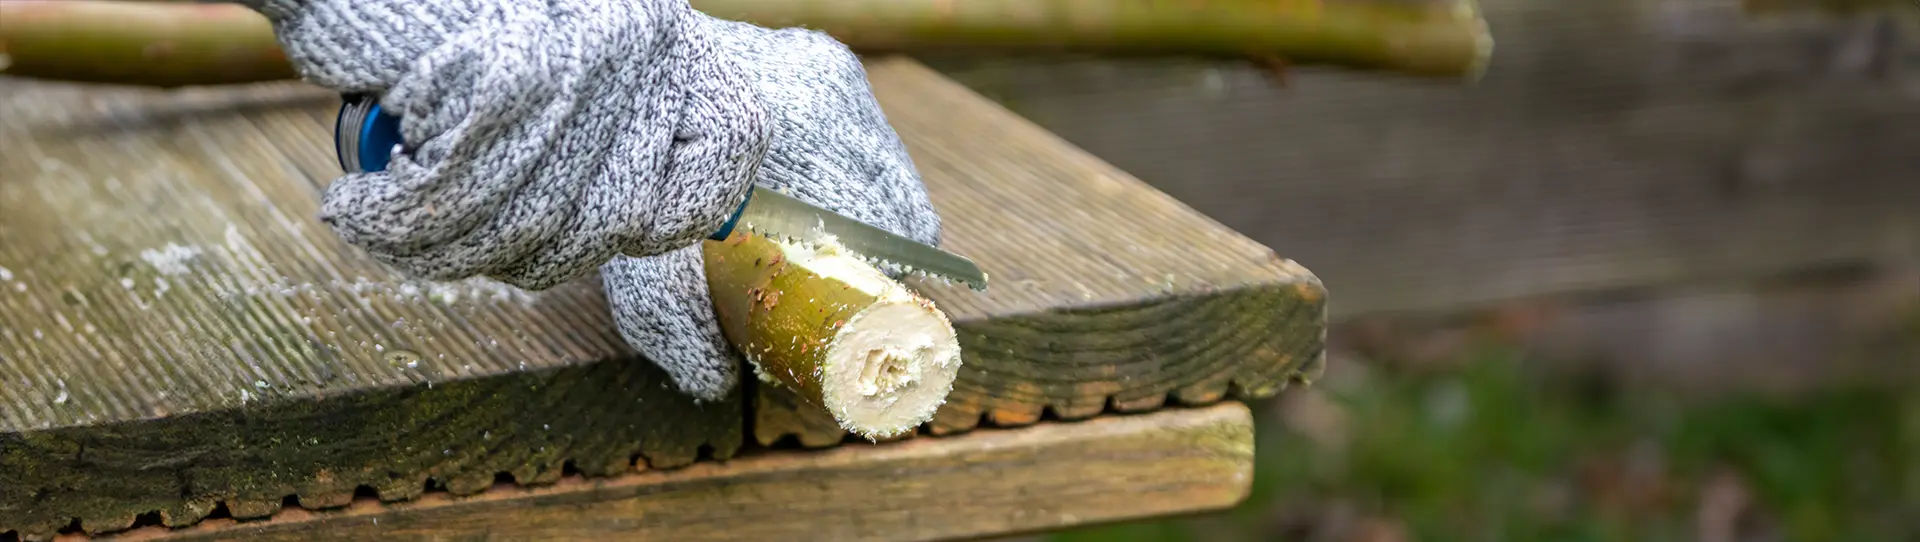 Verletzungsgefahr Holz mit Taschenmesser bearbeiten